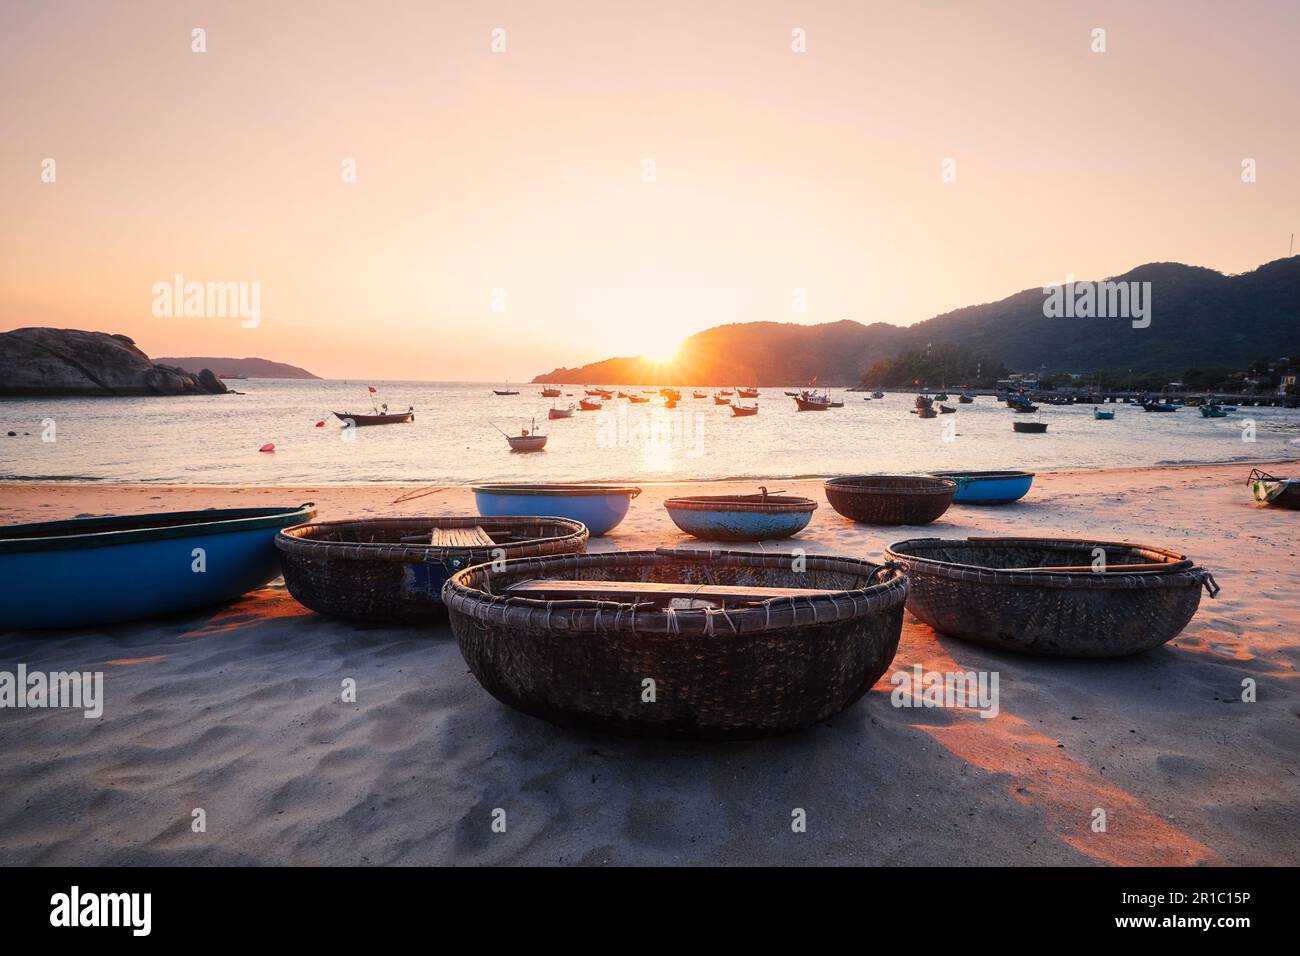 Barcos de la cesta en la playa de arena en la bahía contra el mar en la puesta del sol hermosa. Pueblo pesquero en las islas Cham en Vietnam. Foto de stock